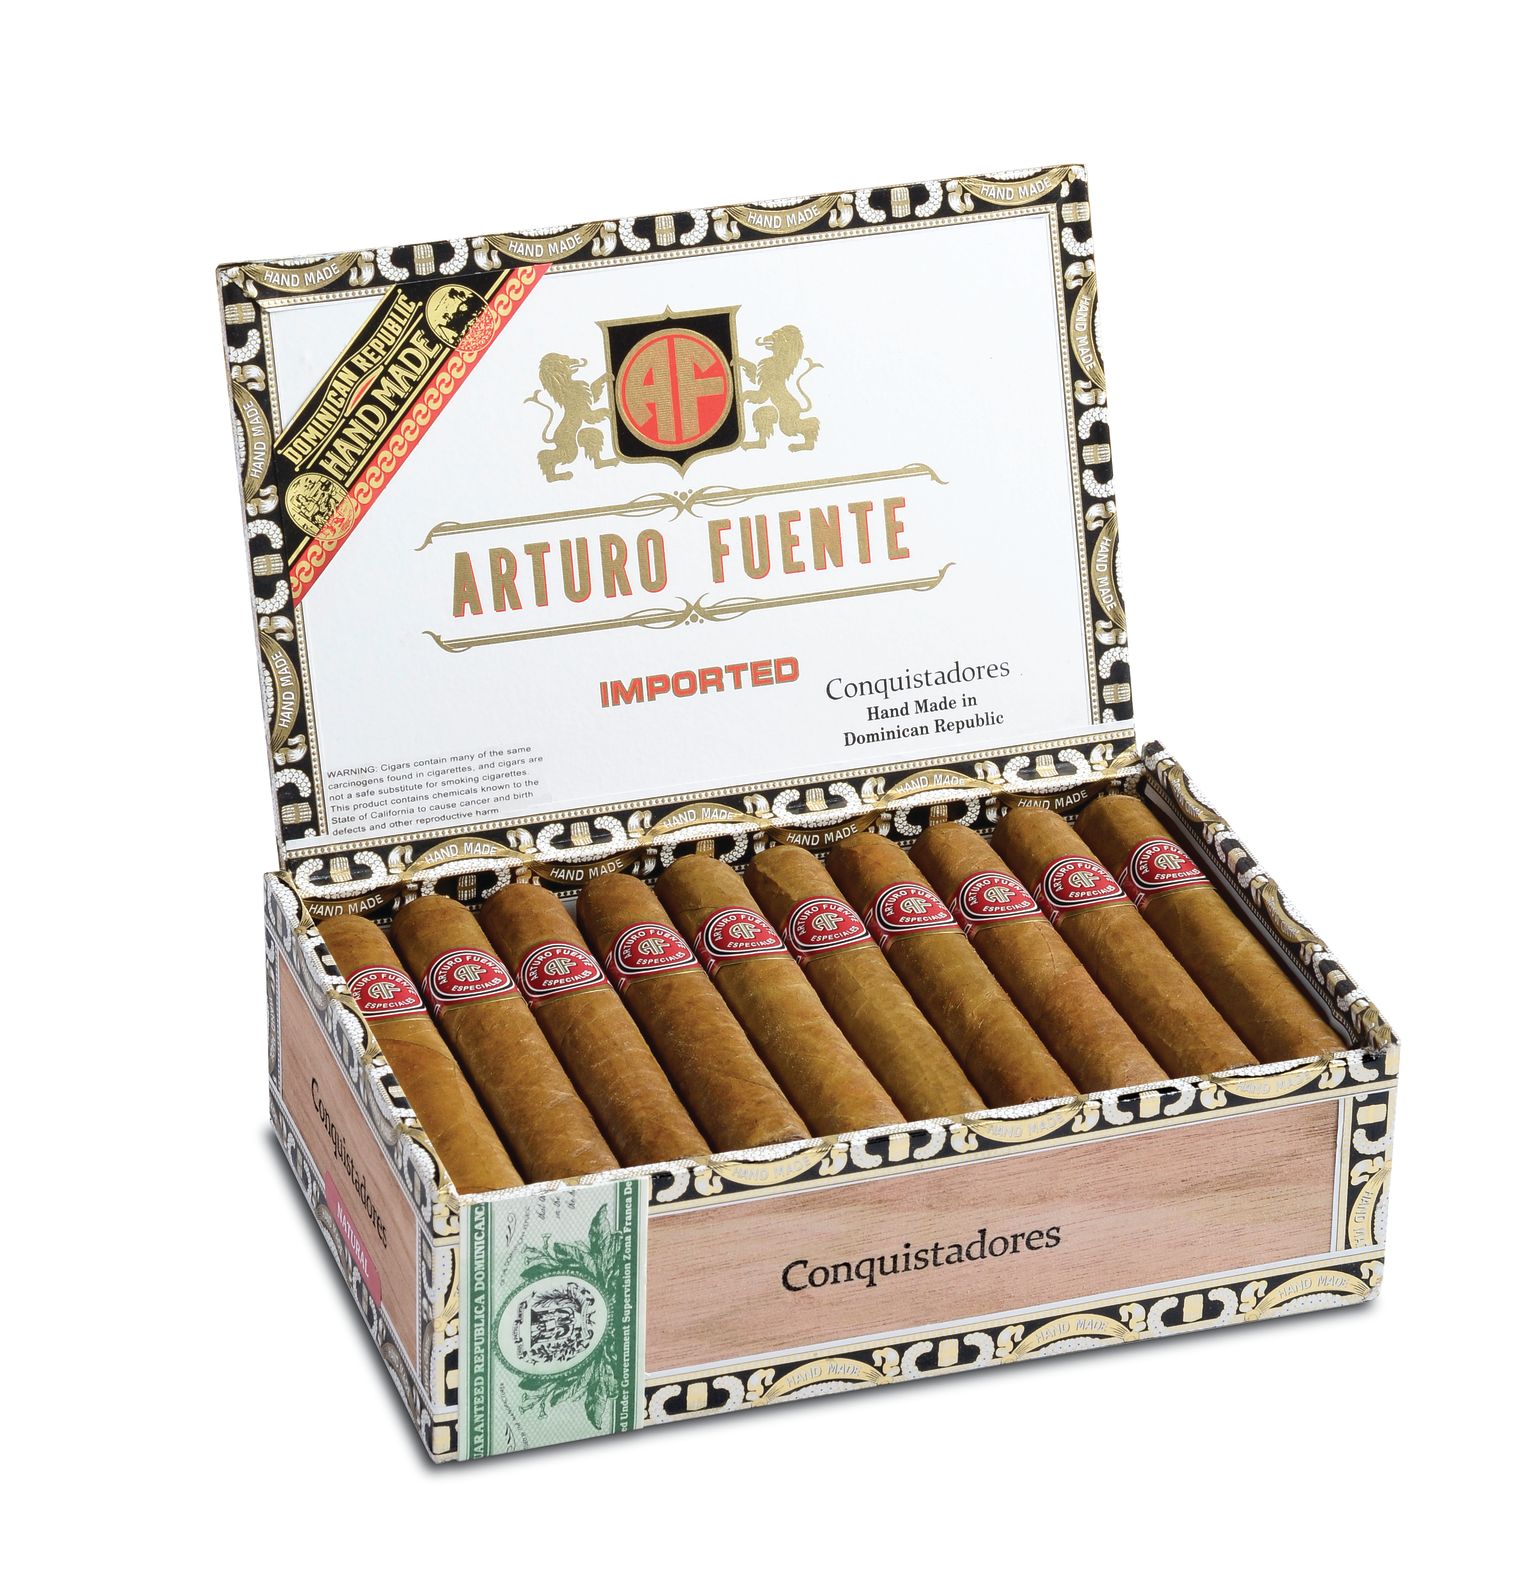 Open box of 30 count Arturo Fuente Especiales Conquistadores cigars